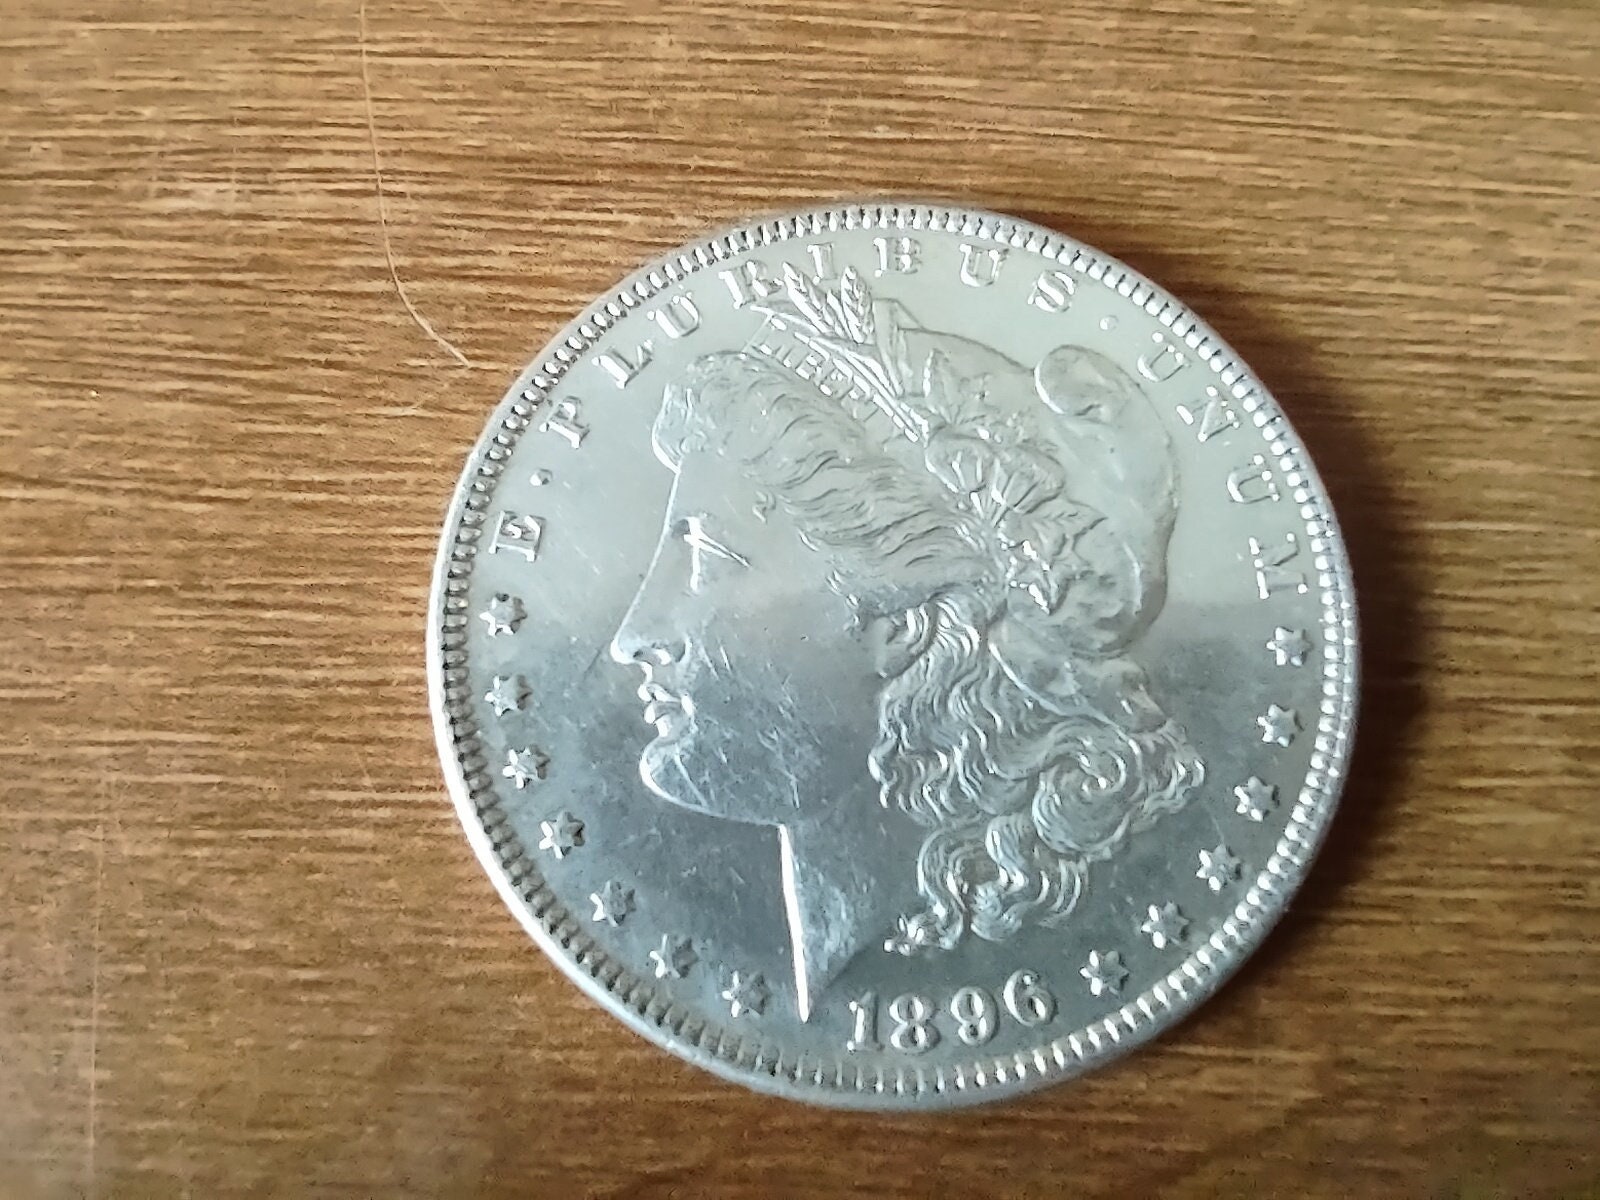 Morgan Silver Dollars Pre-1921